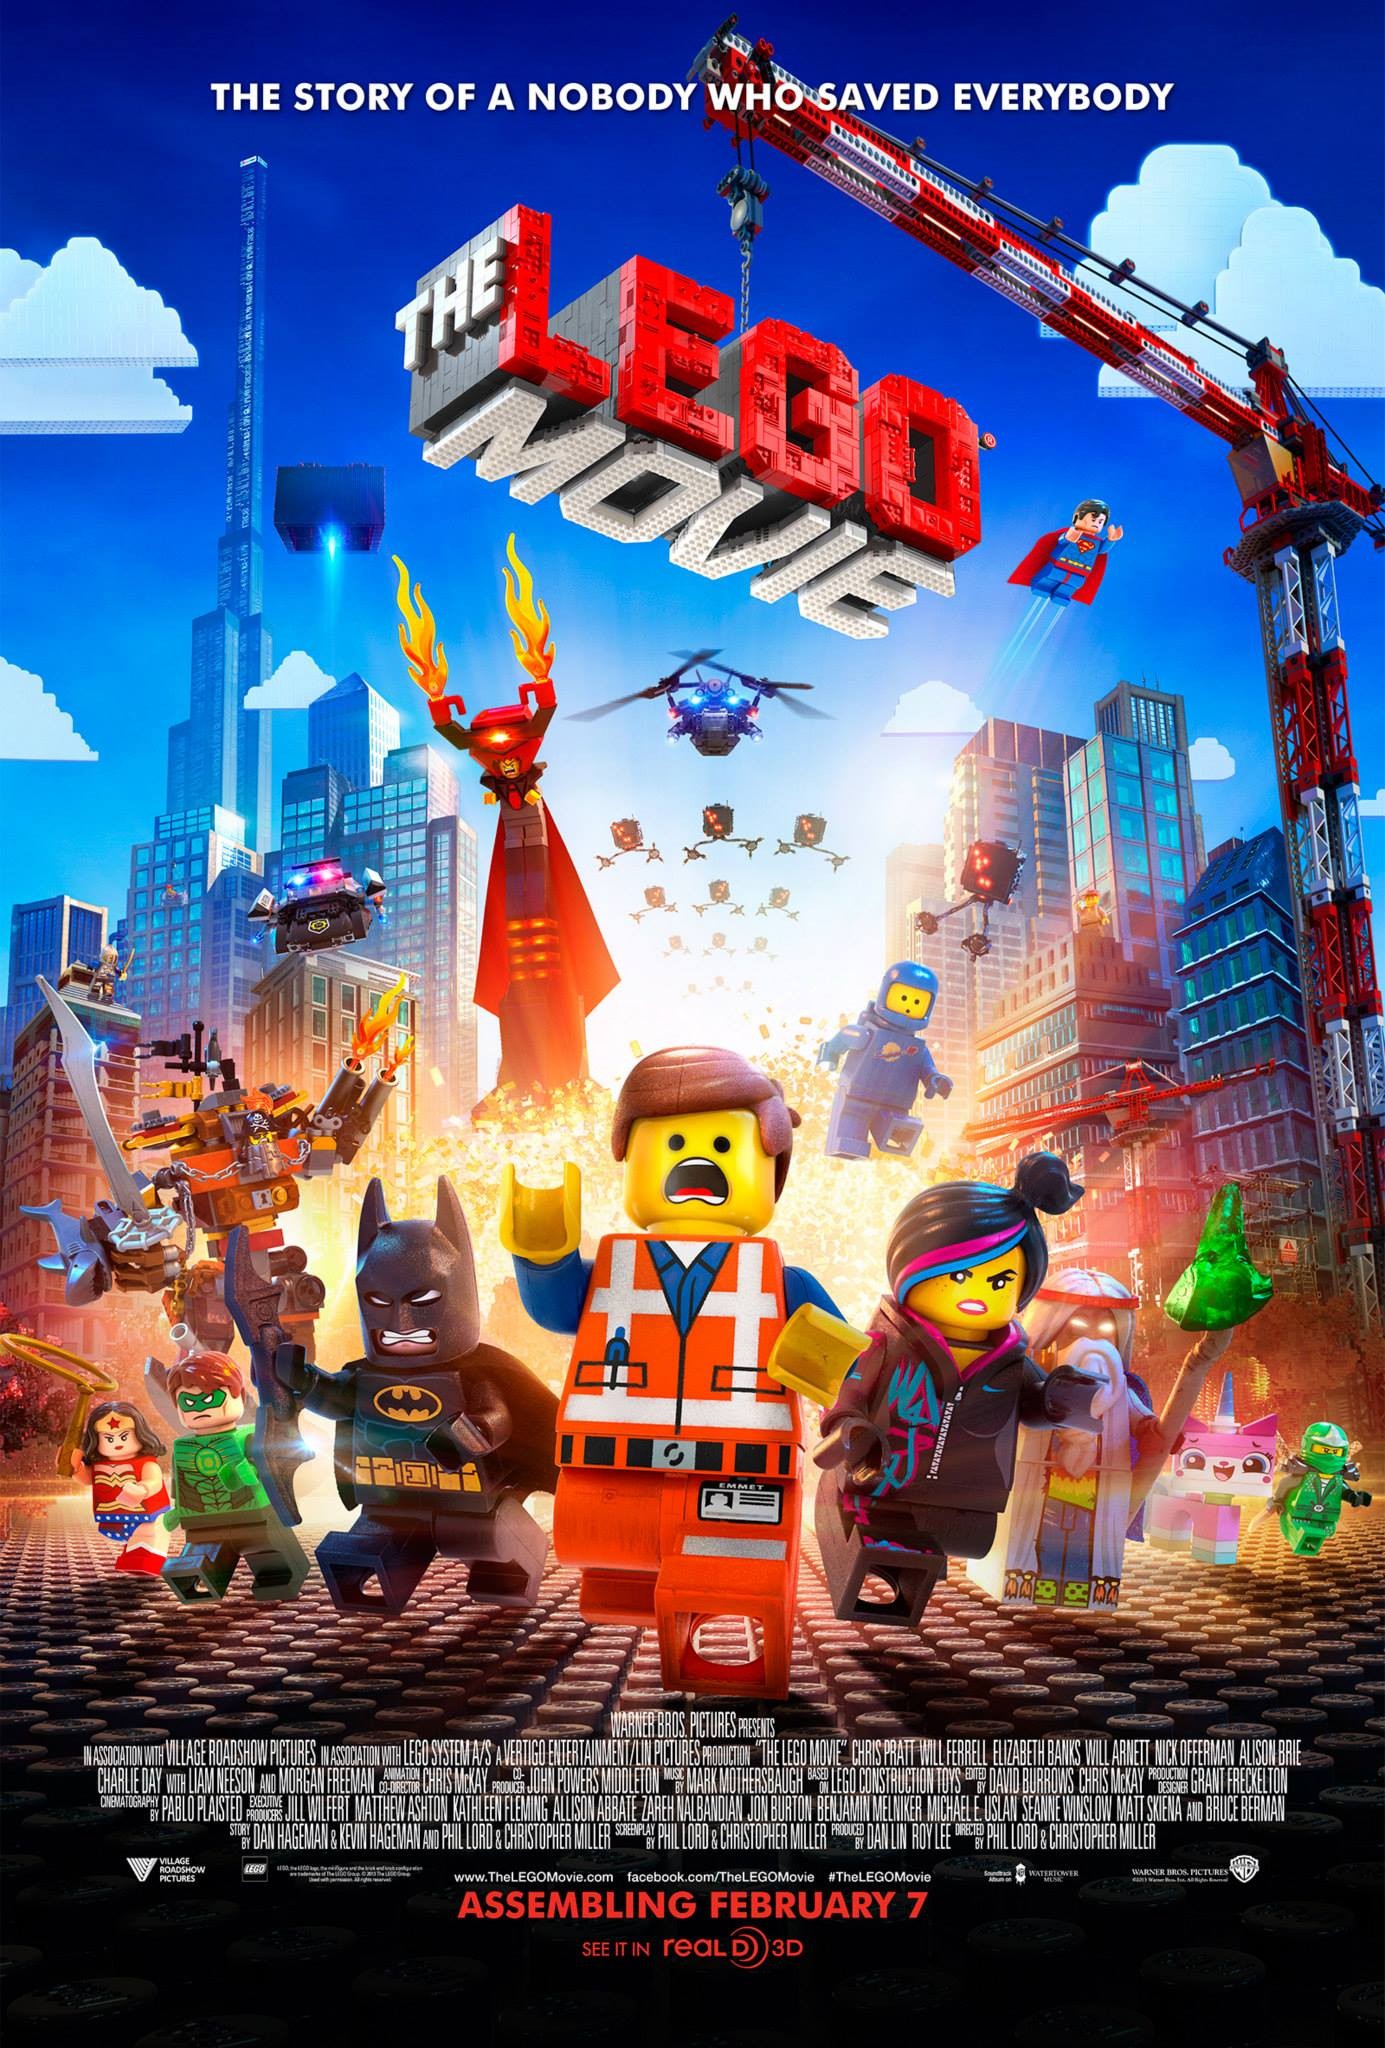 The LEGO Movie | Warner Bros. Entertainment Wiki | Fandom